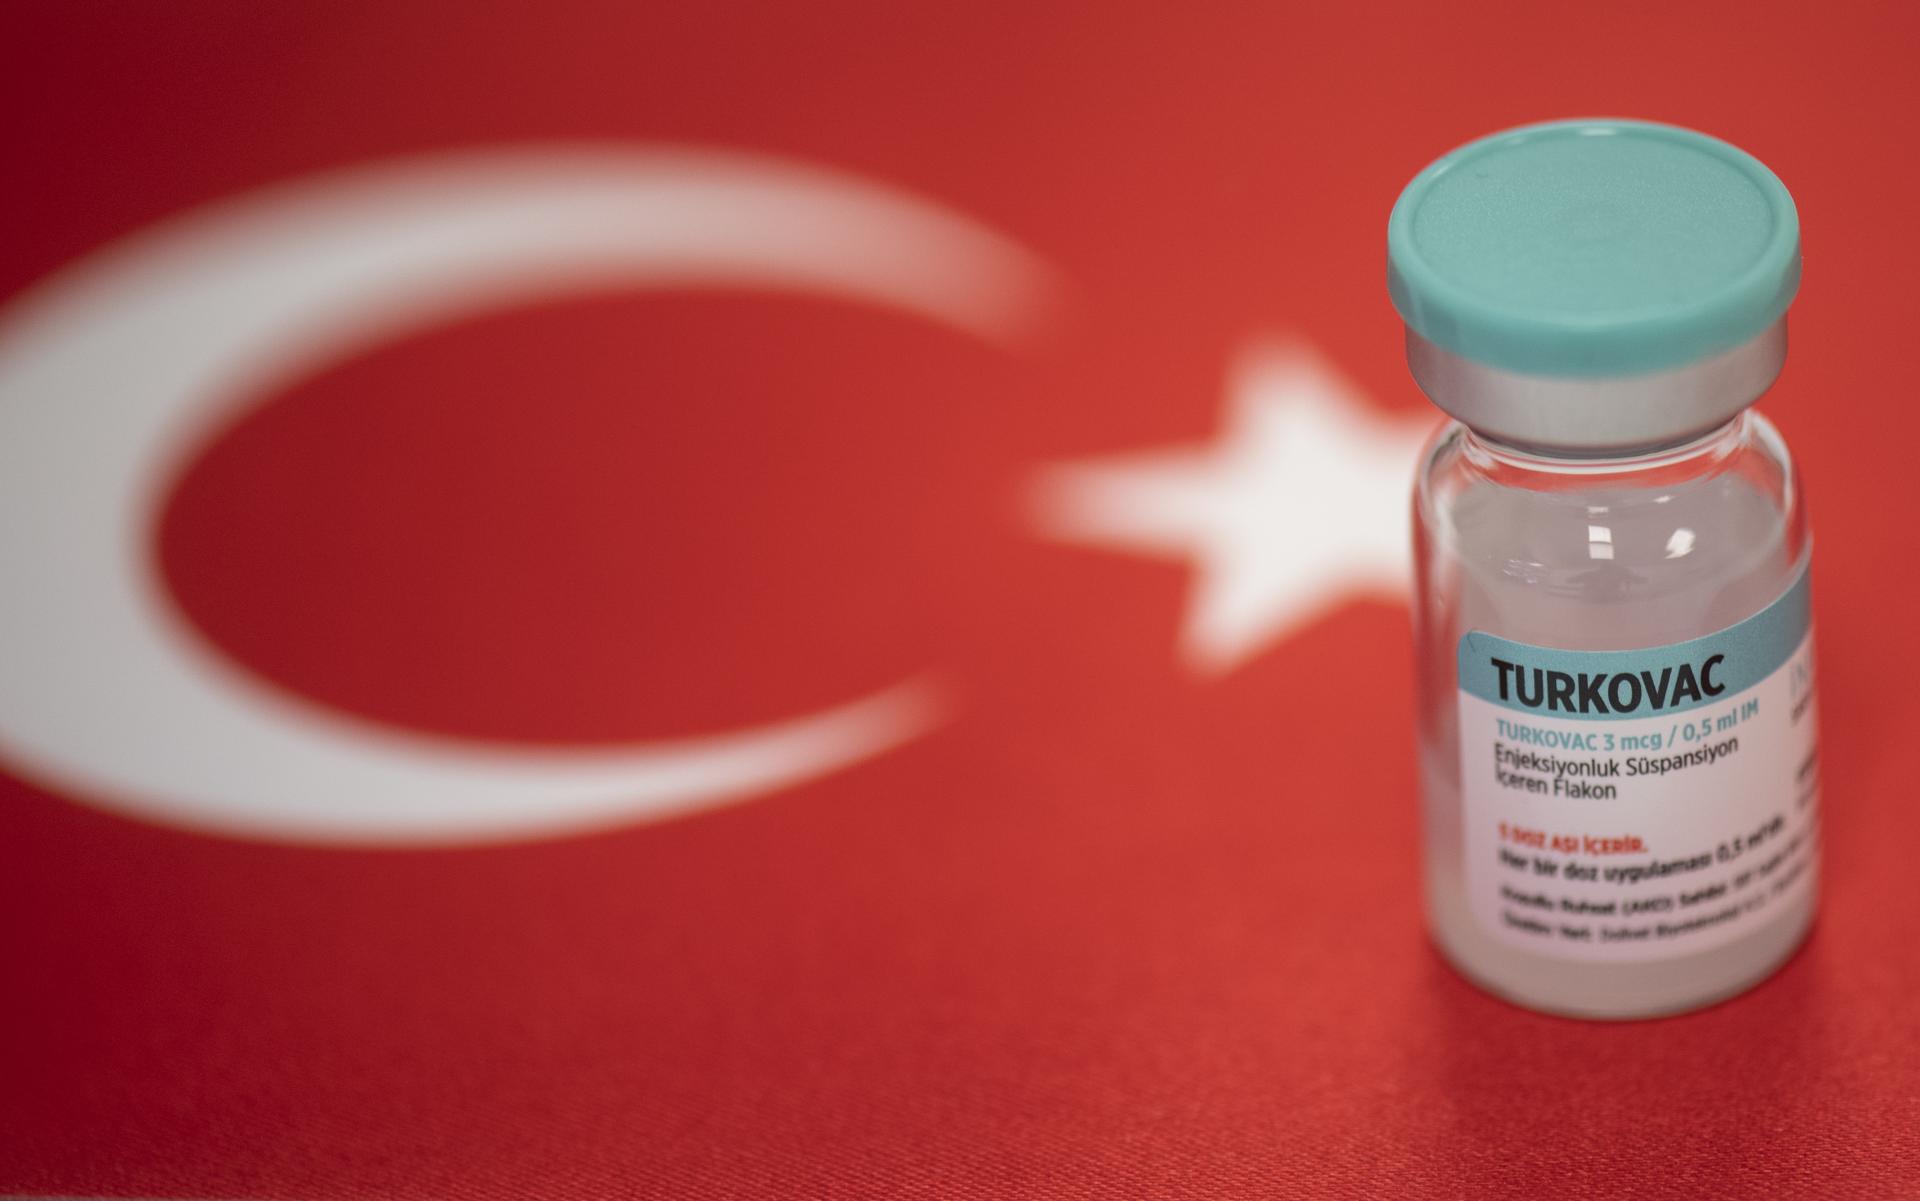 ترکی: ترکوویک پر نئی تحقیق دنیا میں اپنی نوعیت کی پہلی تحقیق ہو گی